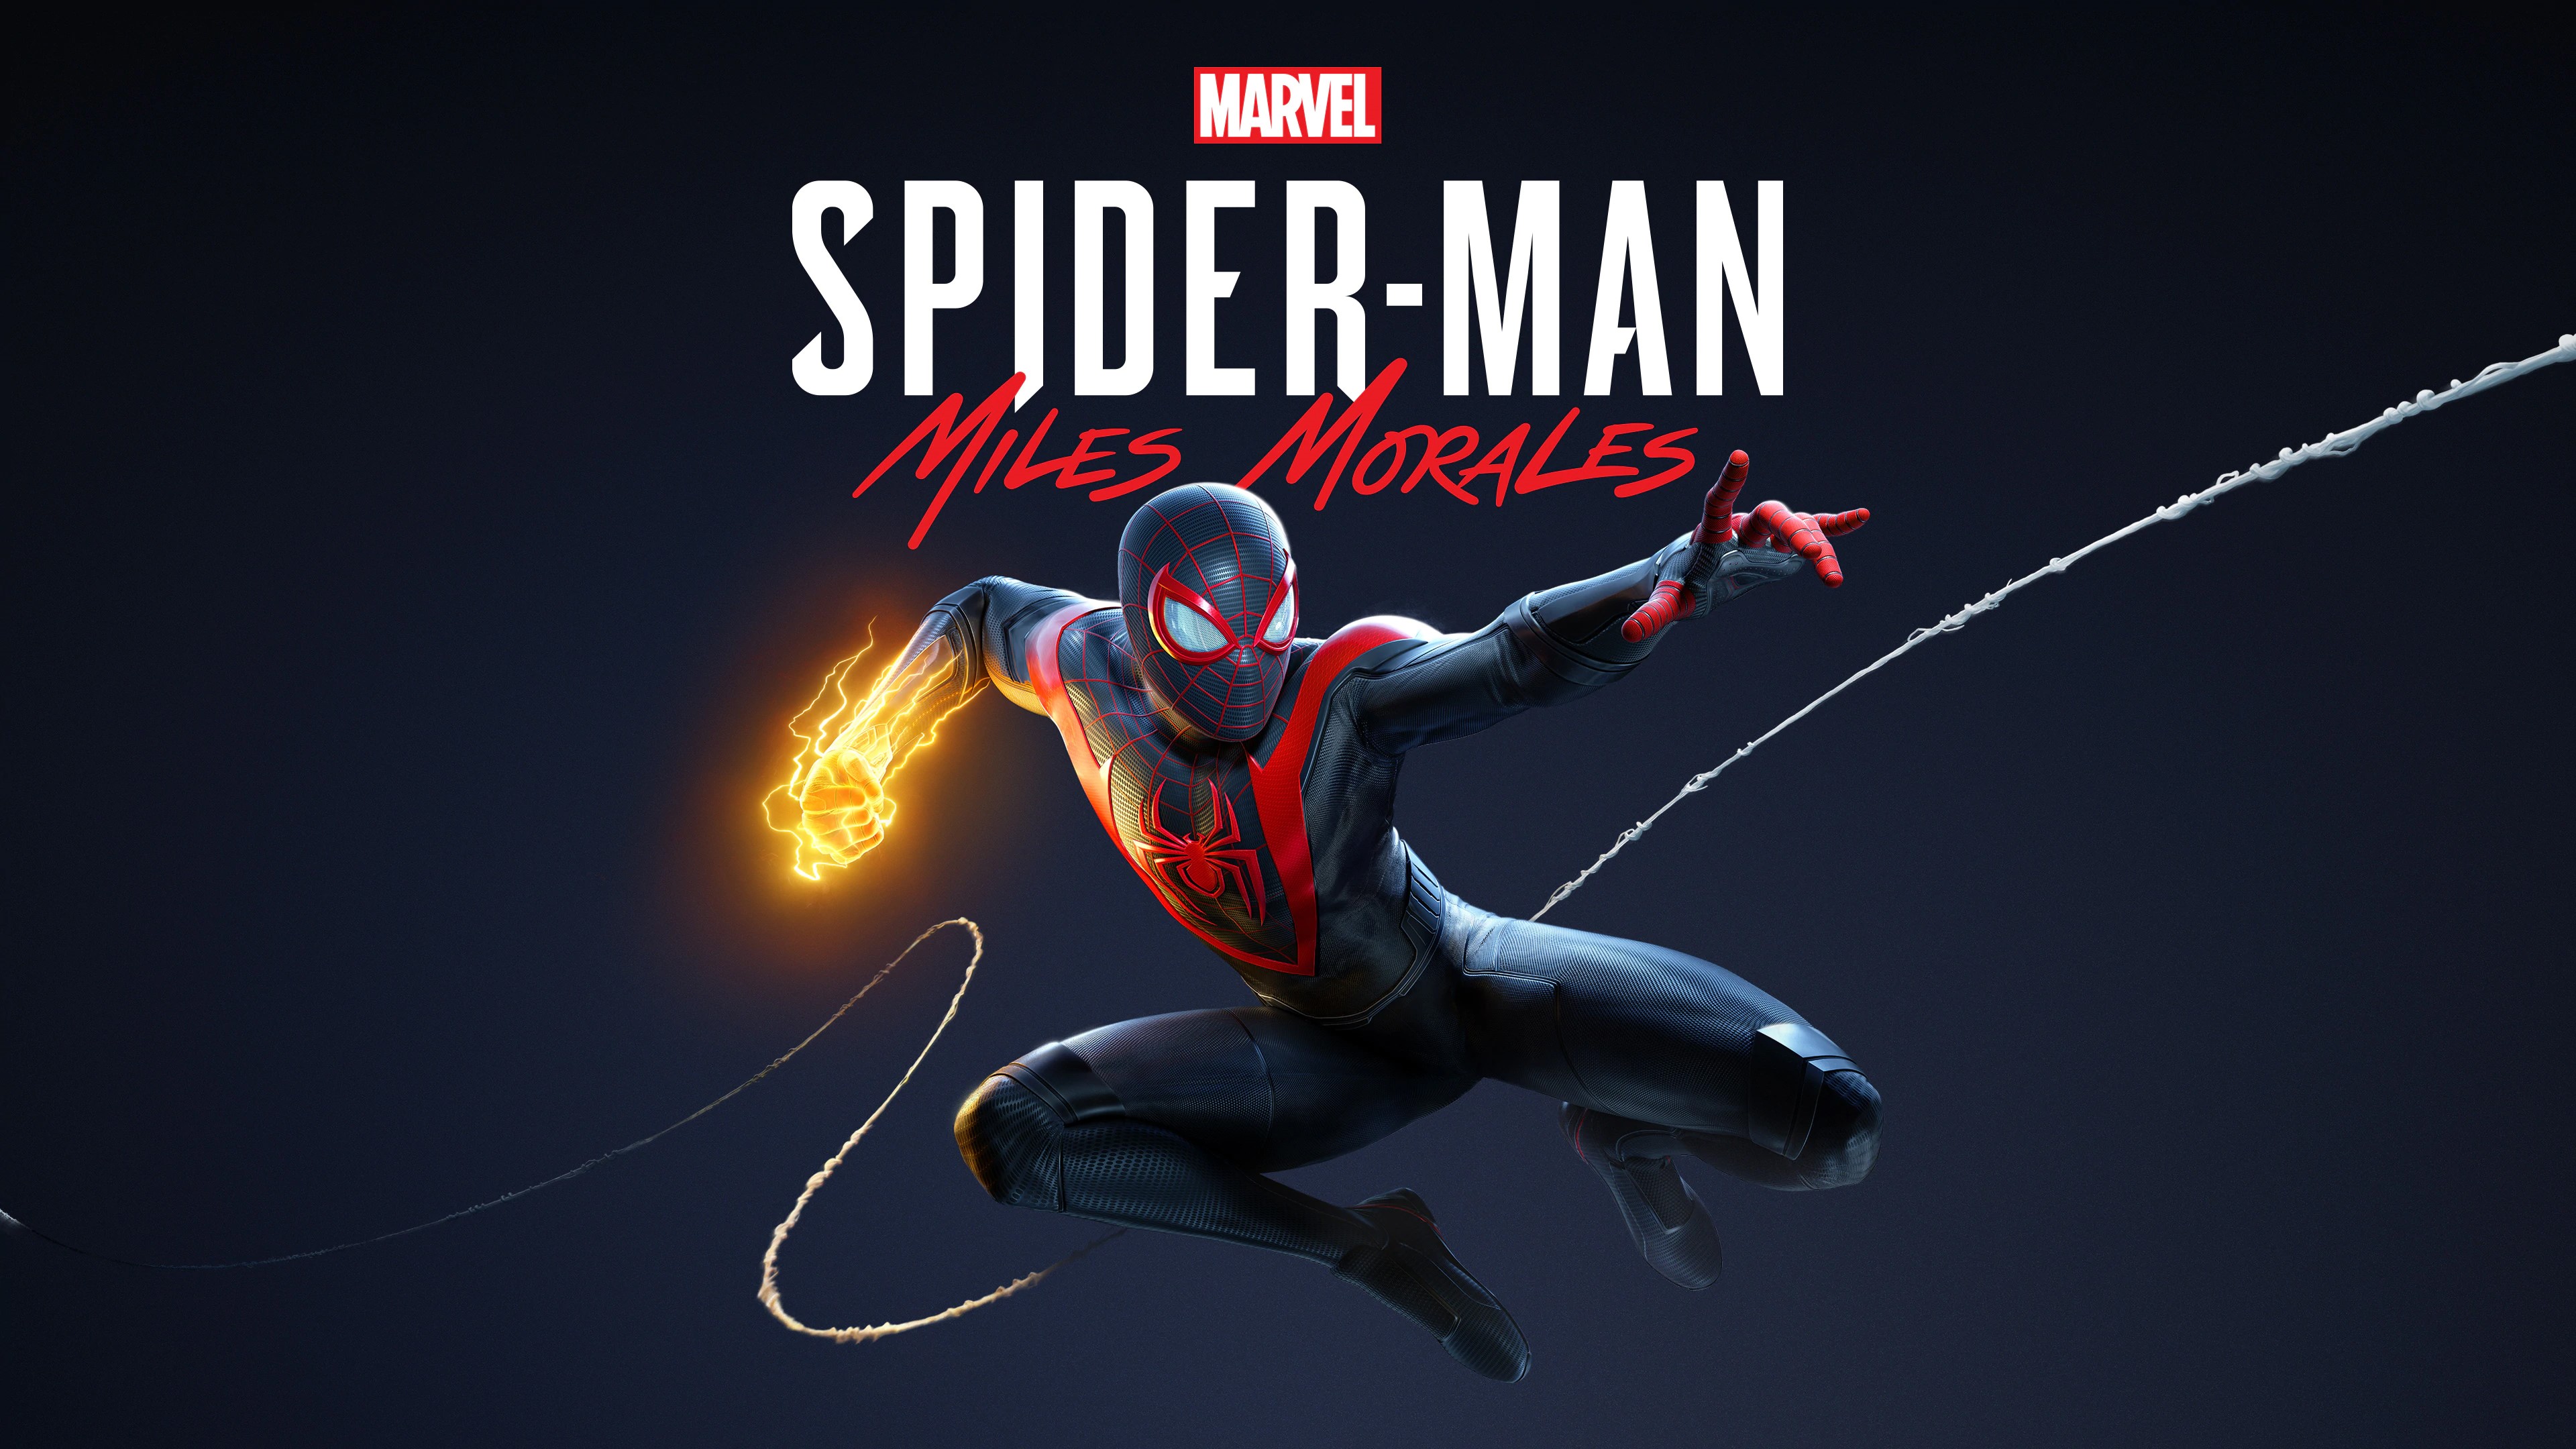 Marvel's Человек-паук /// Spider-Man: Miles Morales ( прохождение 23 ) ФИНАЛ.